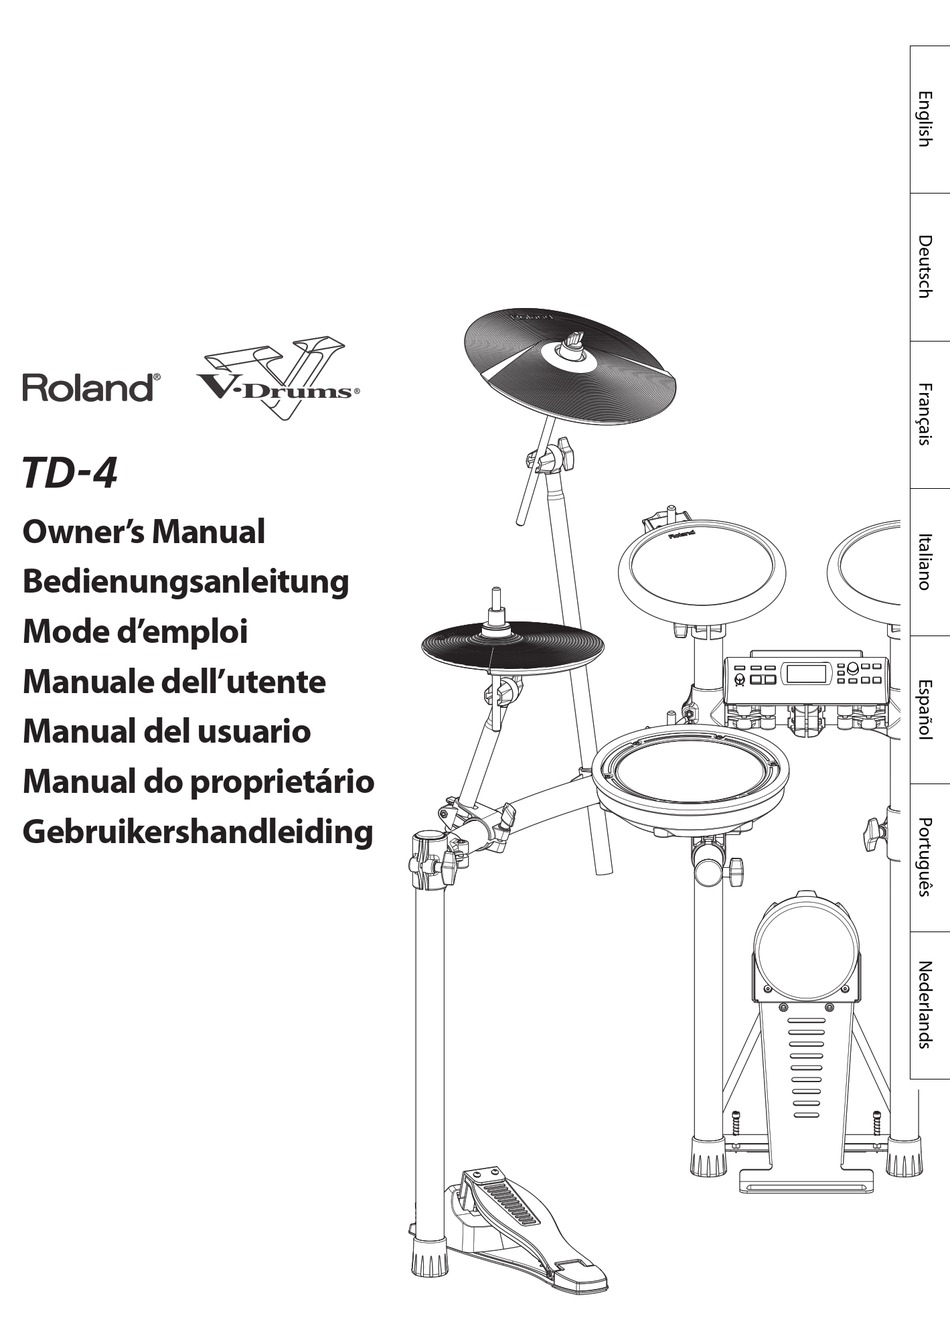 ROLAND TD-4 OWNER'S MANUAL Pdf Download | ManualsLib